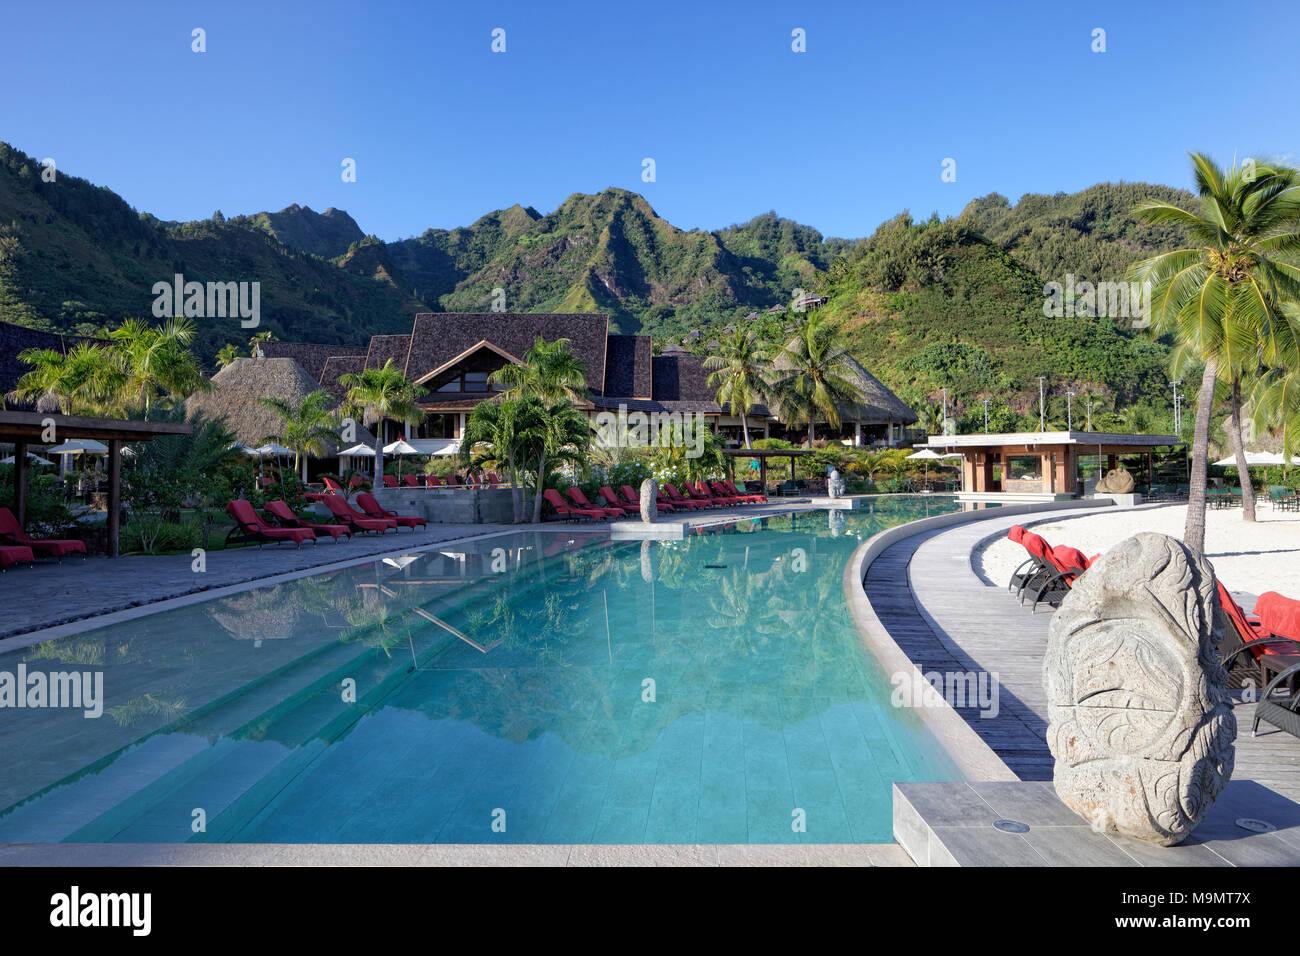 Piscine avec un paysage montagneux, Green Hills, hotel de luxe, Interconti Resort, Moorea, îles de la société, les îles sous le vent Banque D'Images